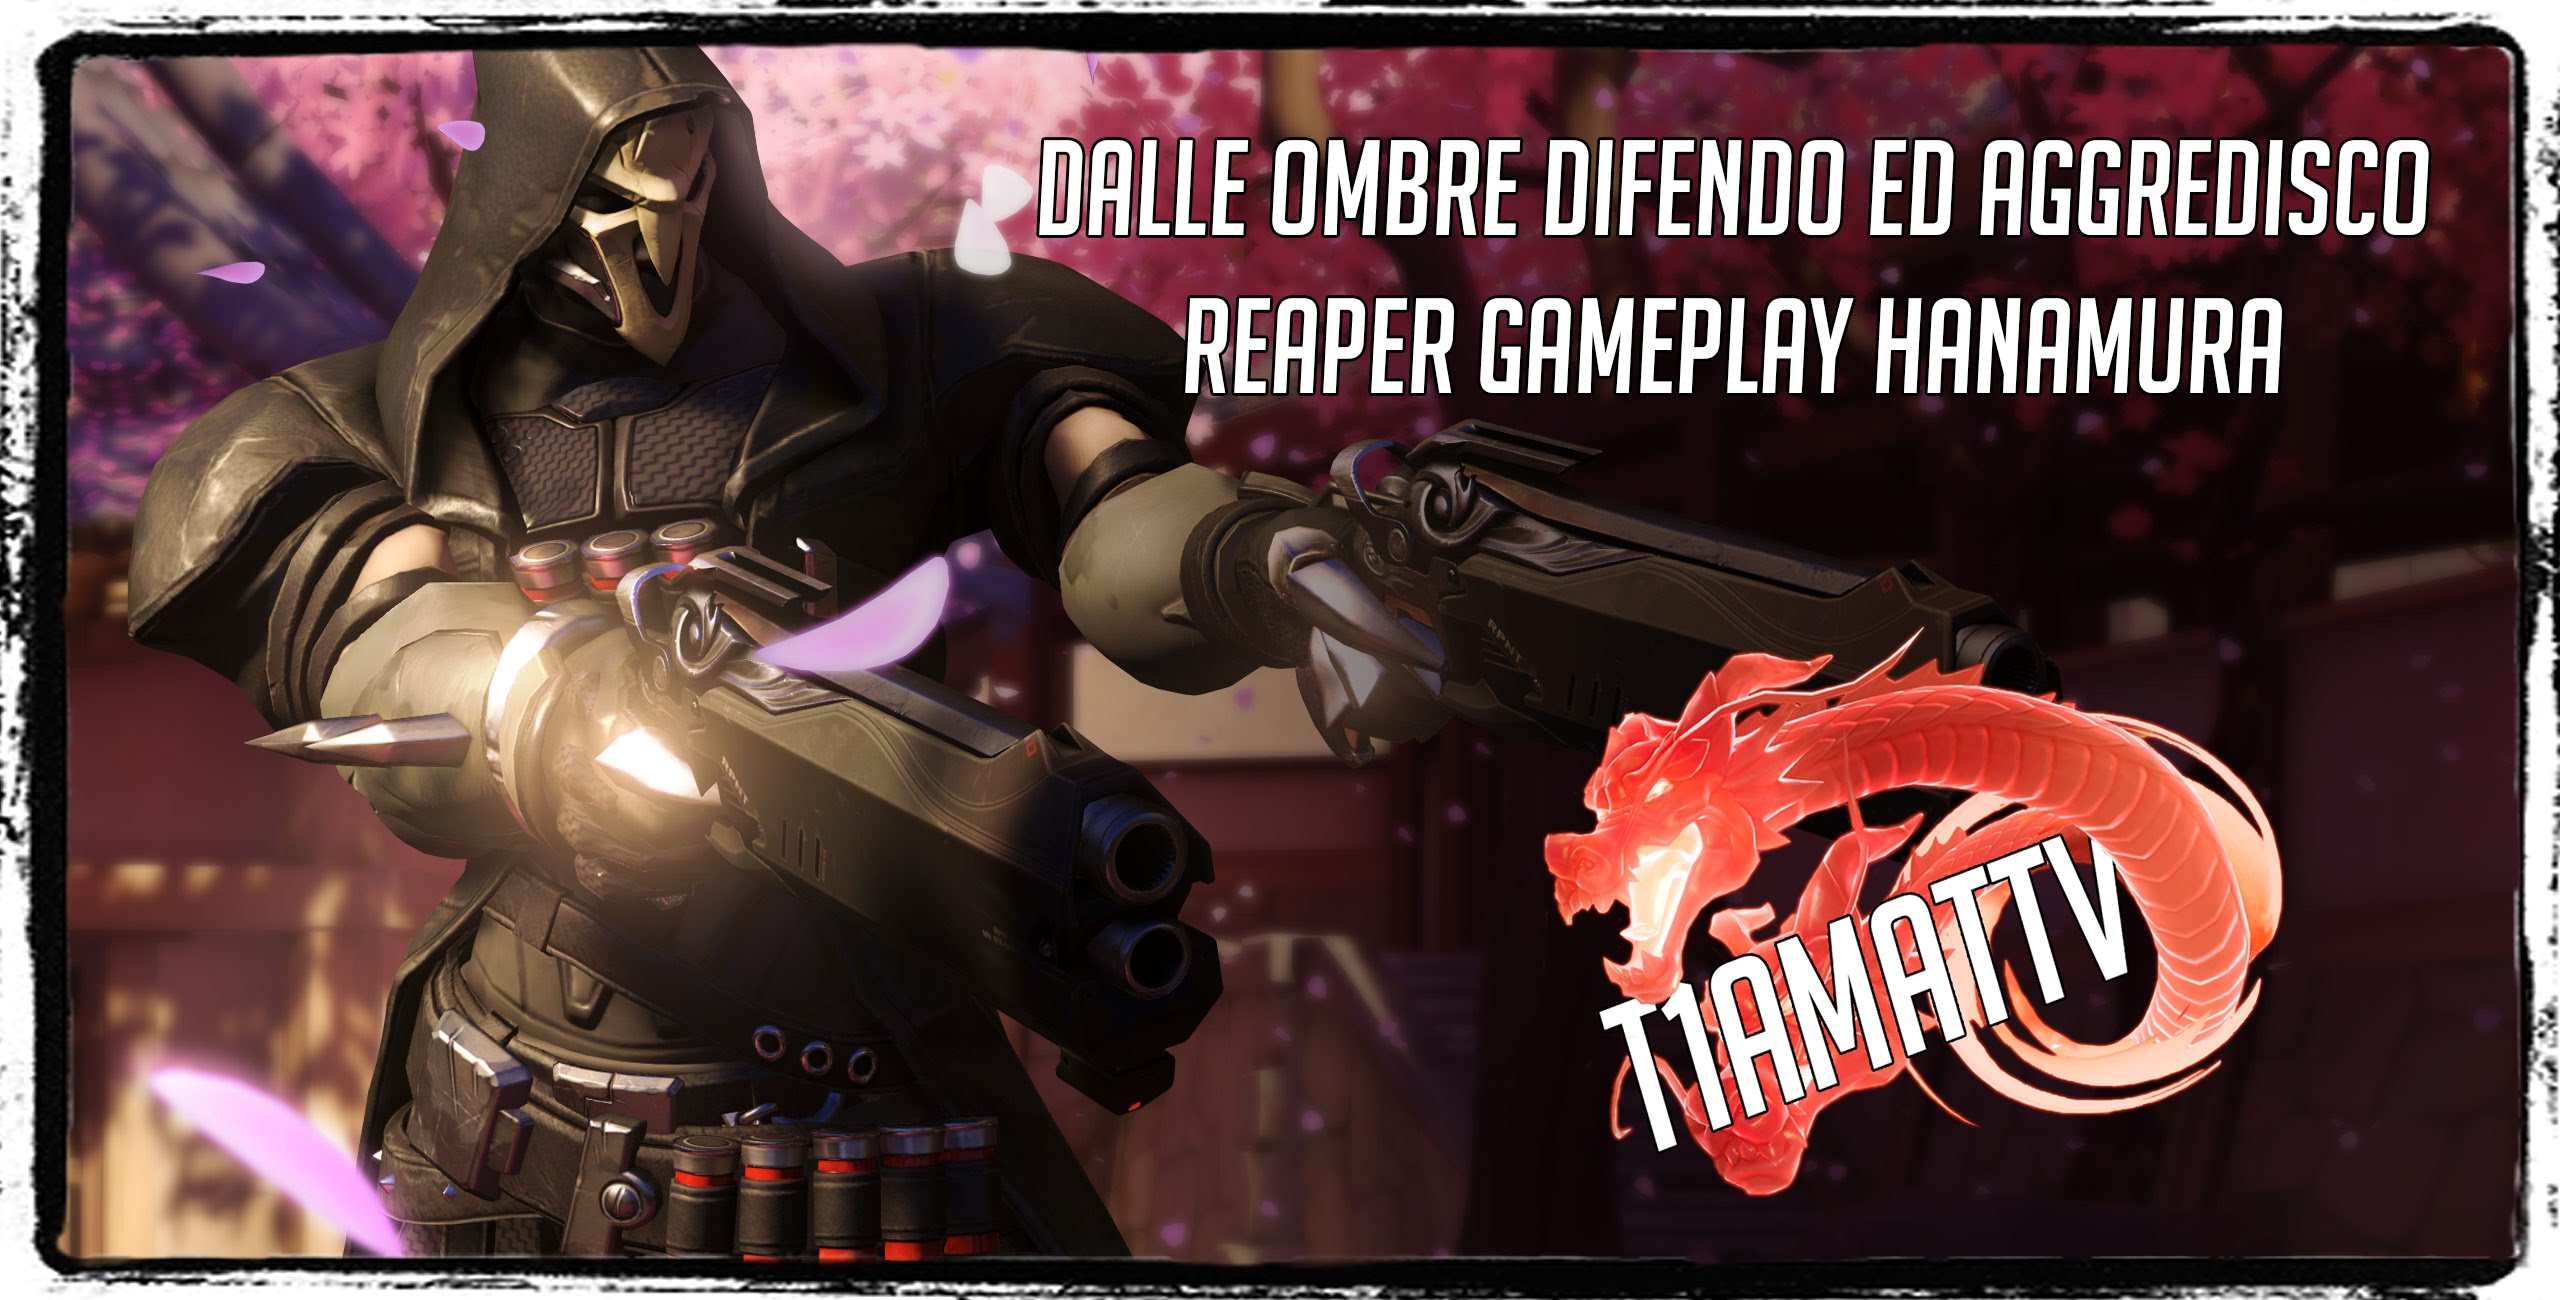 T1A in “dalle Ombre difendo ed aggredisco” – Reaper Gameplay!